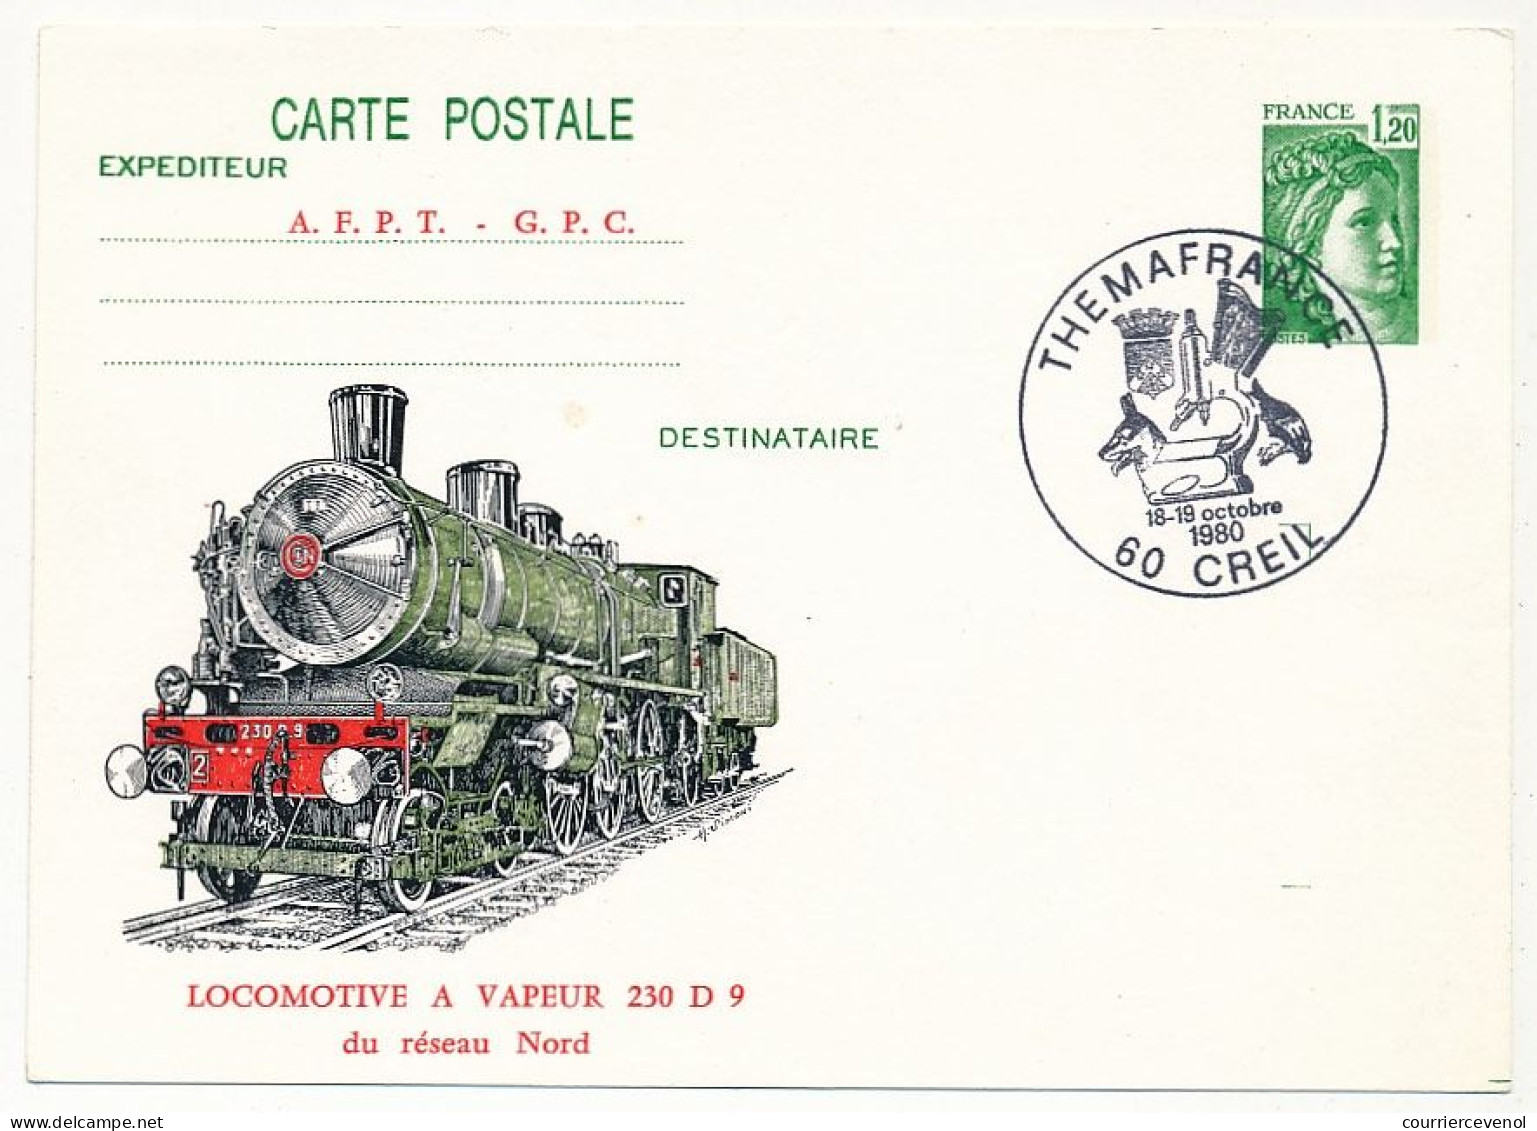 Entier Repiqué 1,20 Sabine - Locomotive Vapeur 230 D 9 Réseau Nord - Thémafrance 60 CREIL - Octobre 1980 - Bijgewerkte Postkaarten  (voor 1995)